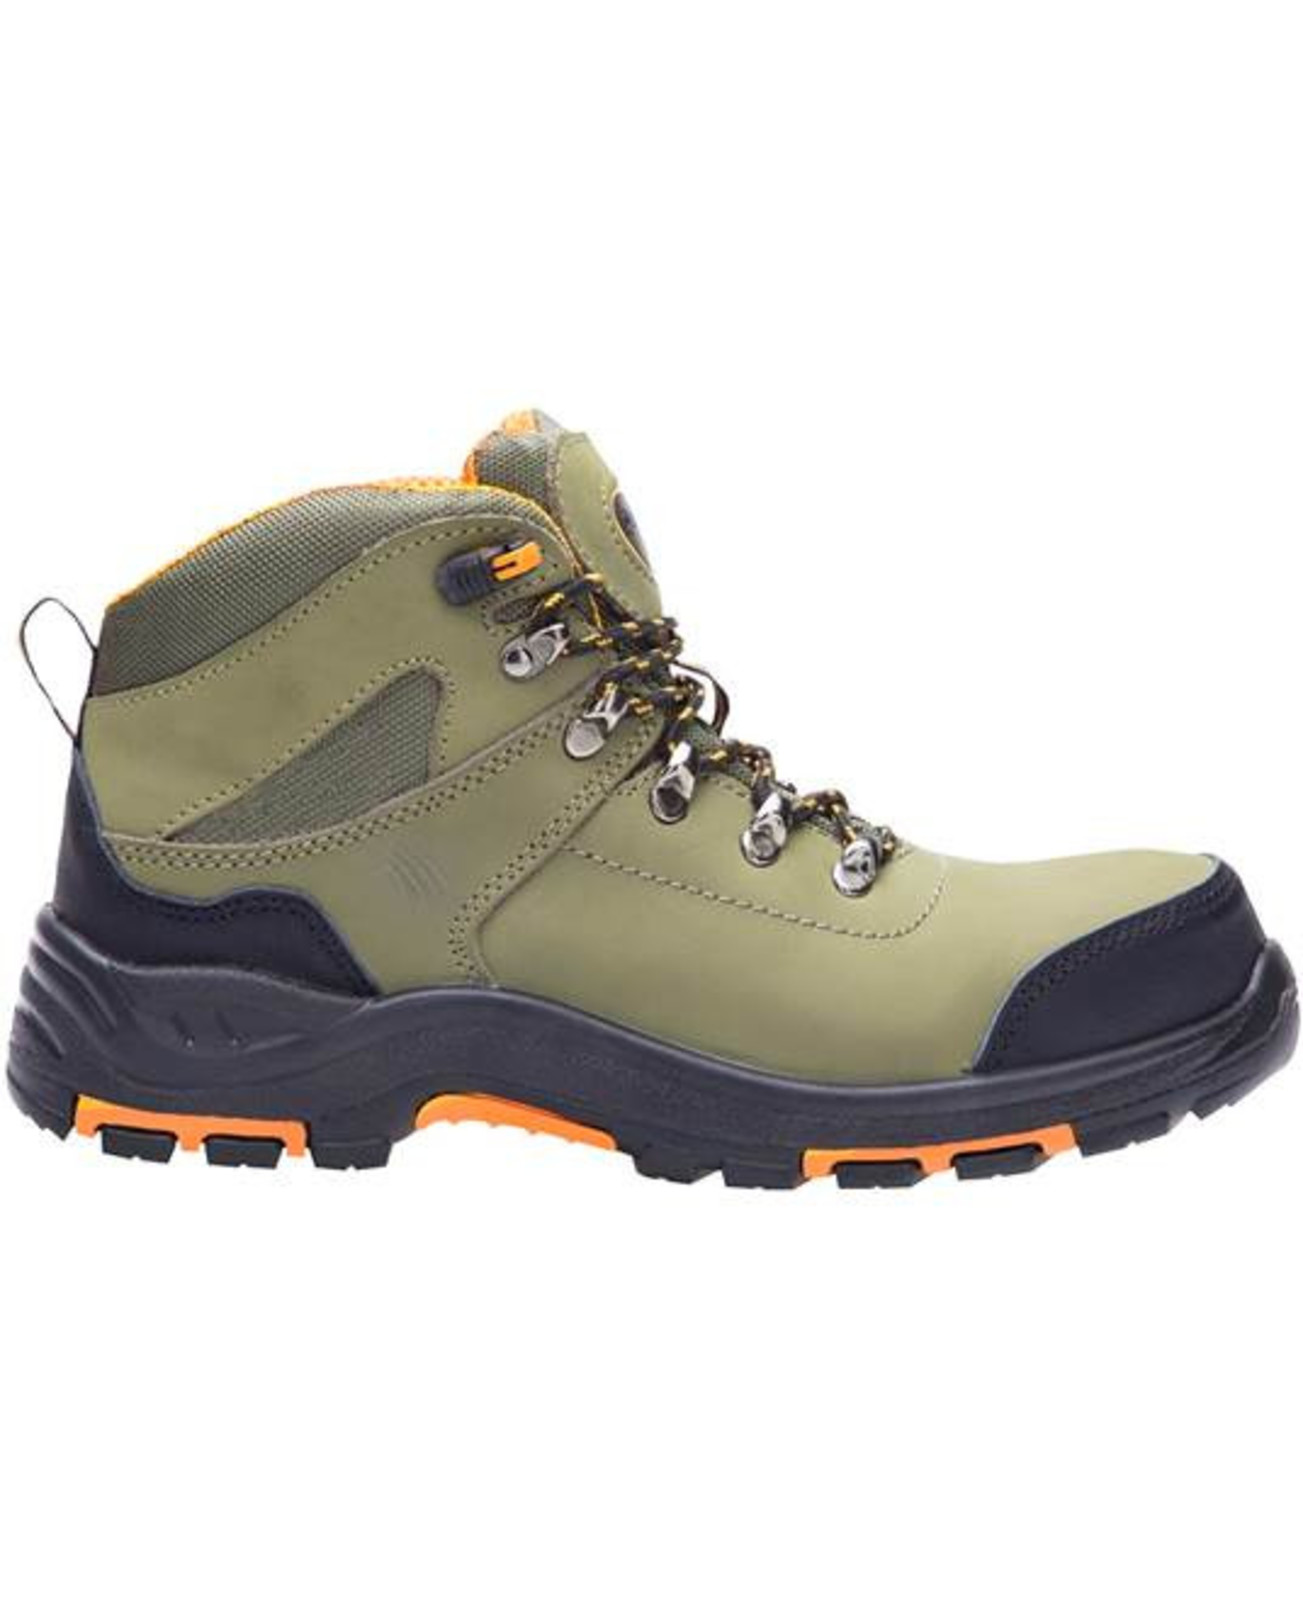 Bezpečnostná členková obuv Ardon Grinder S3 FO HRO SRC - veľkosť: 38, farba: khaki/oranžová